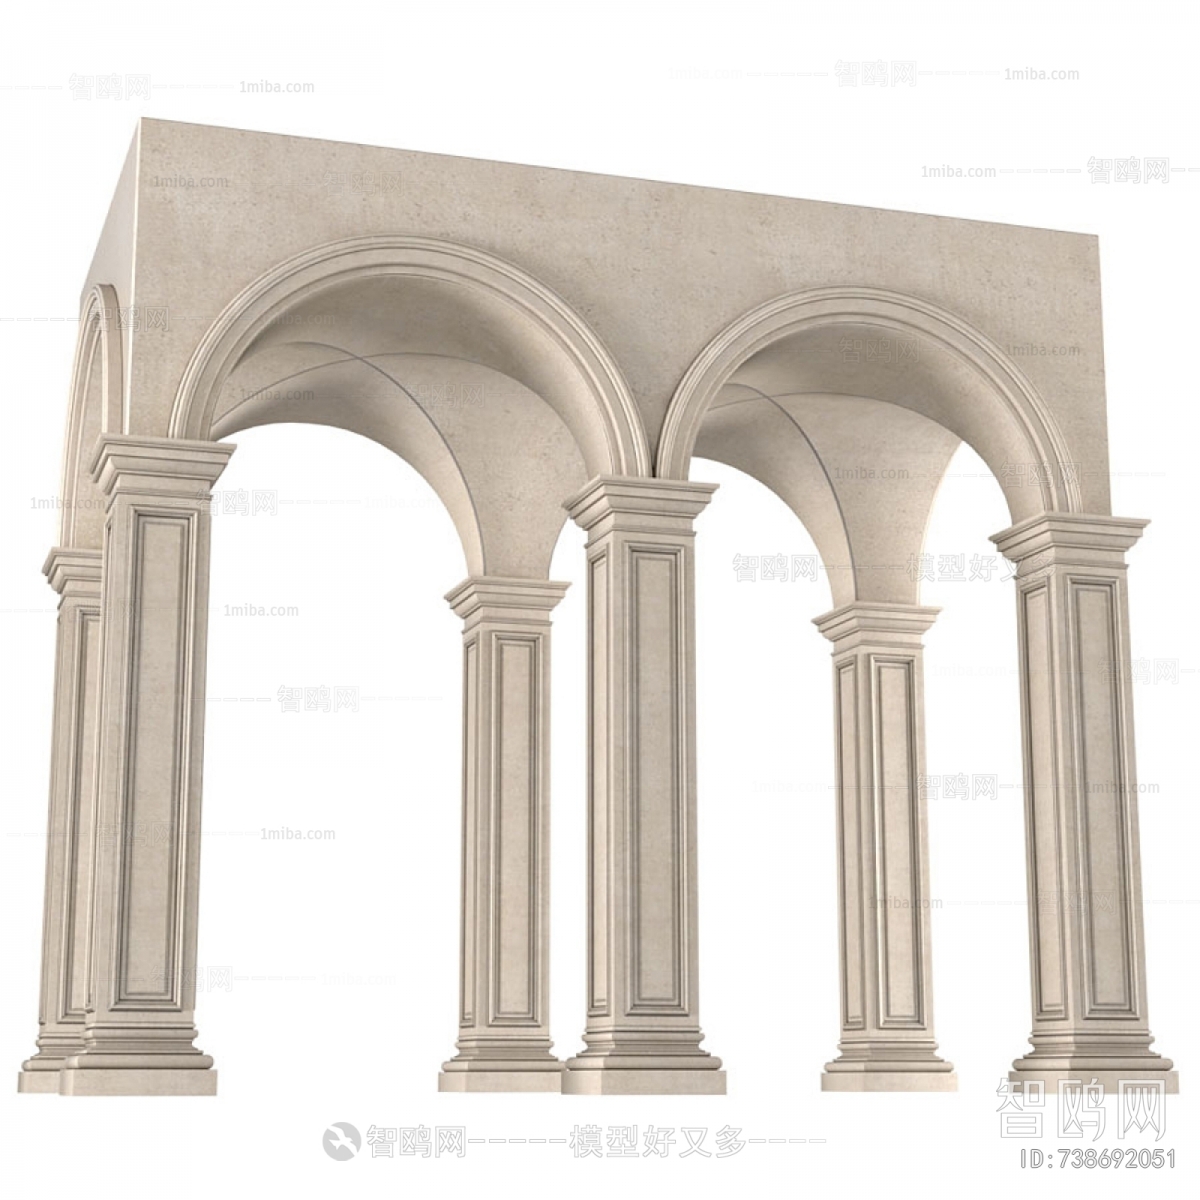 欧式拱形圆顶天花 罗马柱 拱形门洞